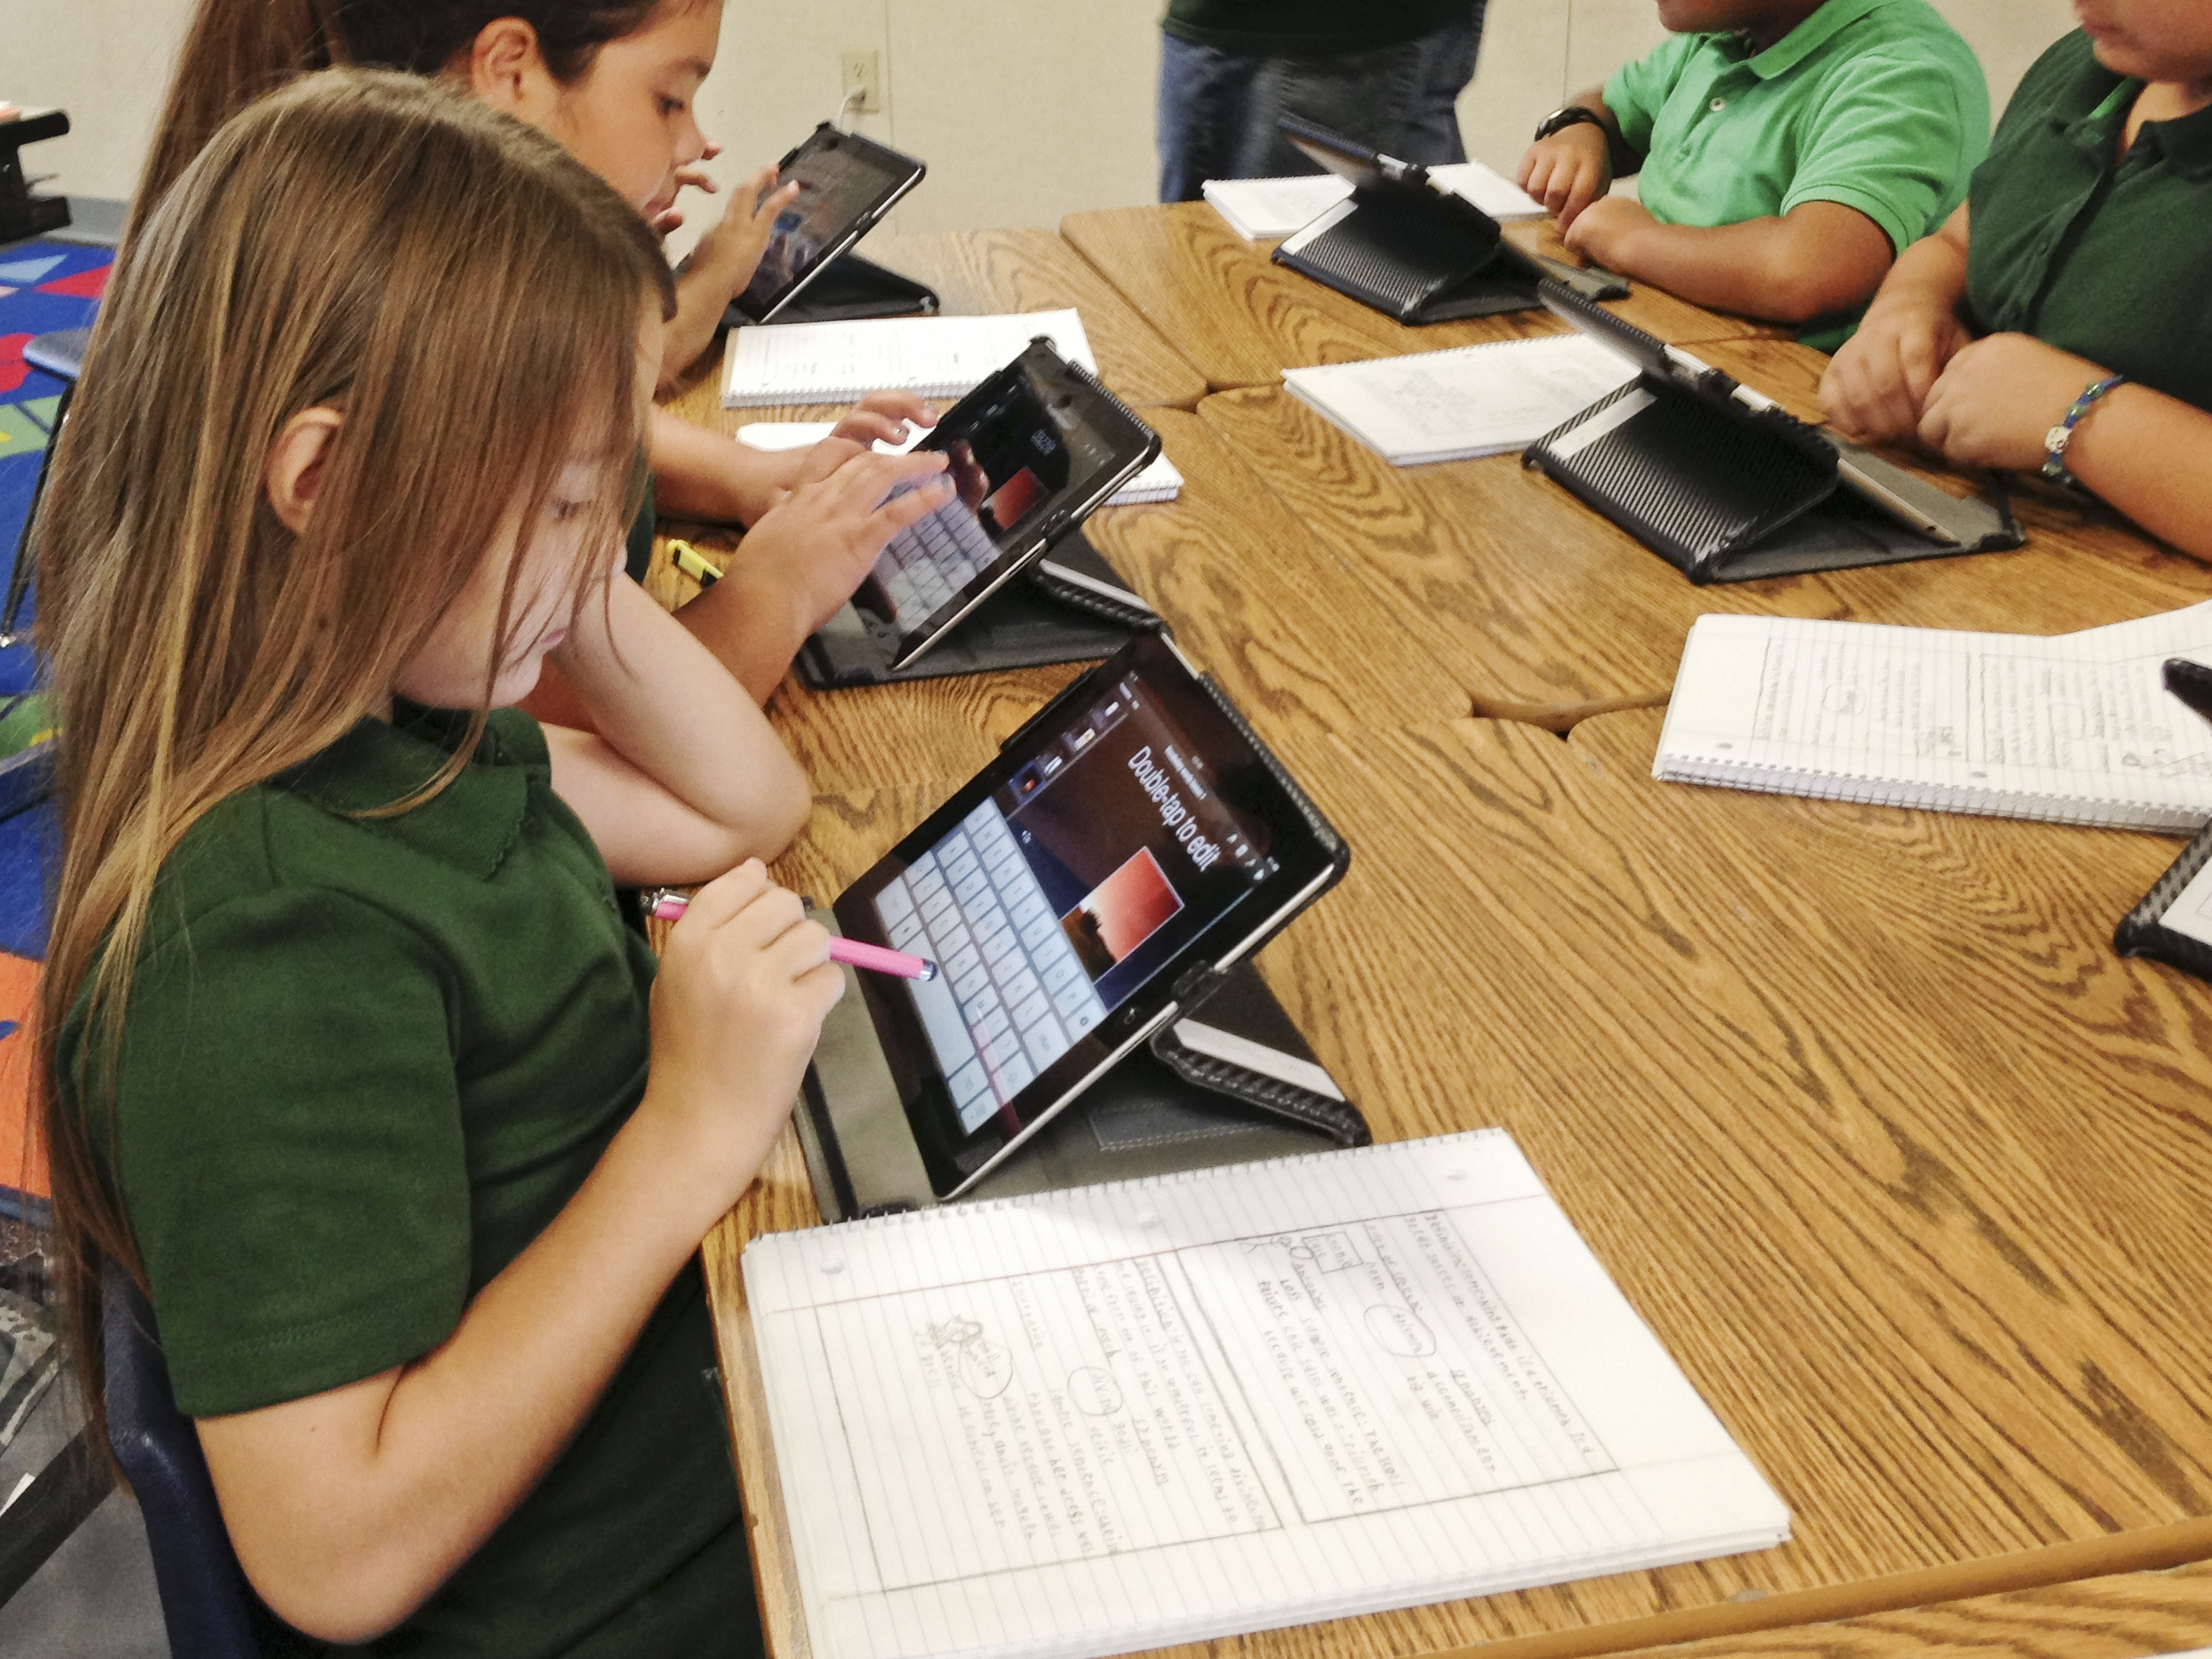  التدريس والتعلم: استخدام أجهزة iPad في الفصل الدراسي